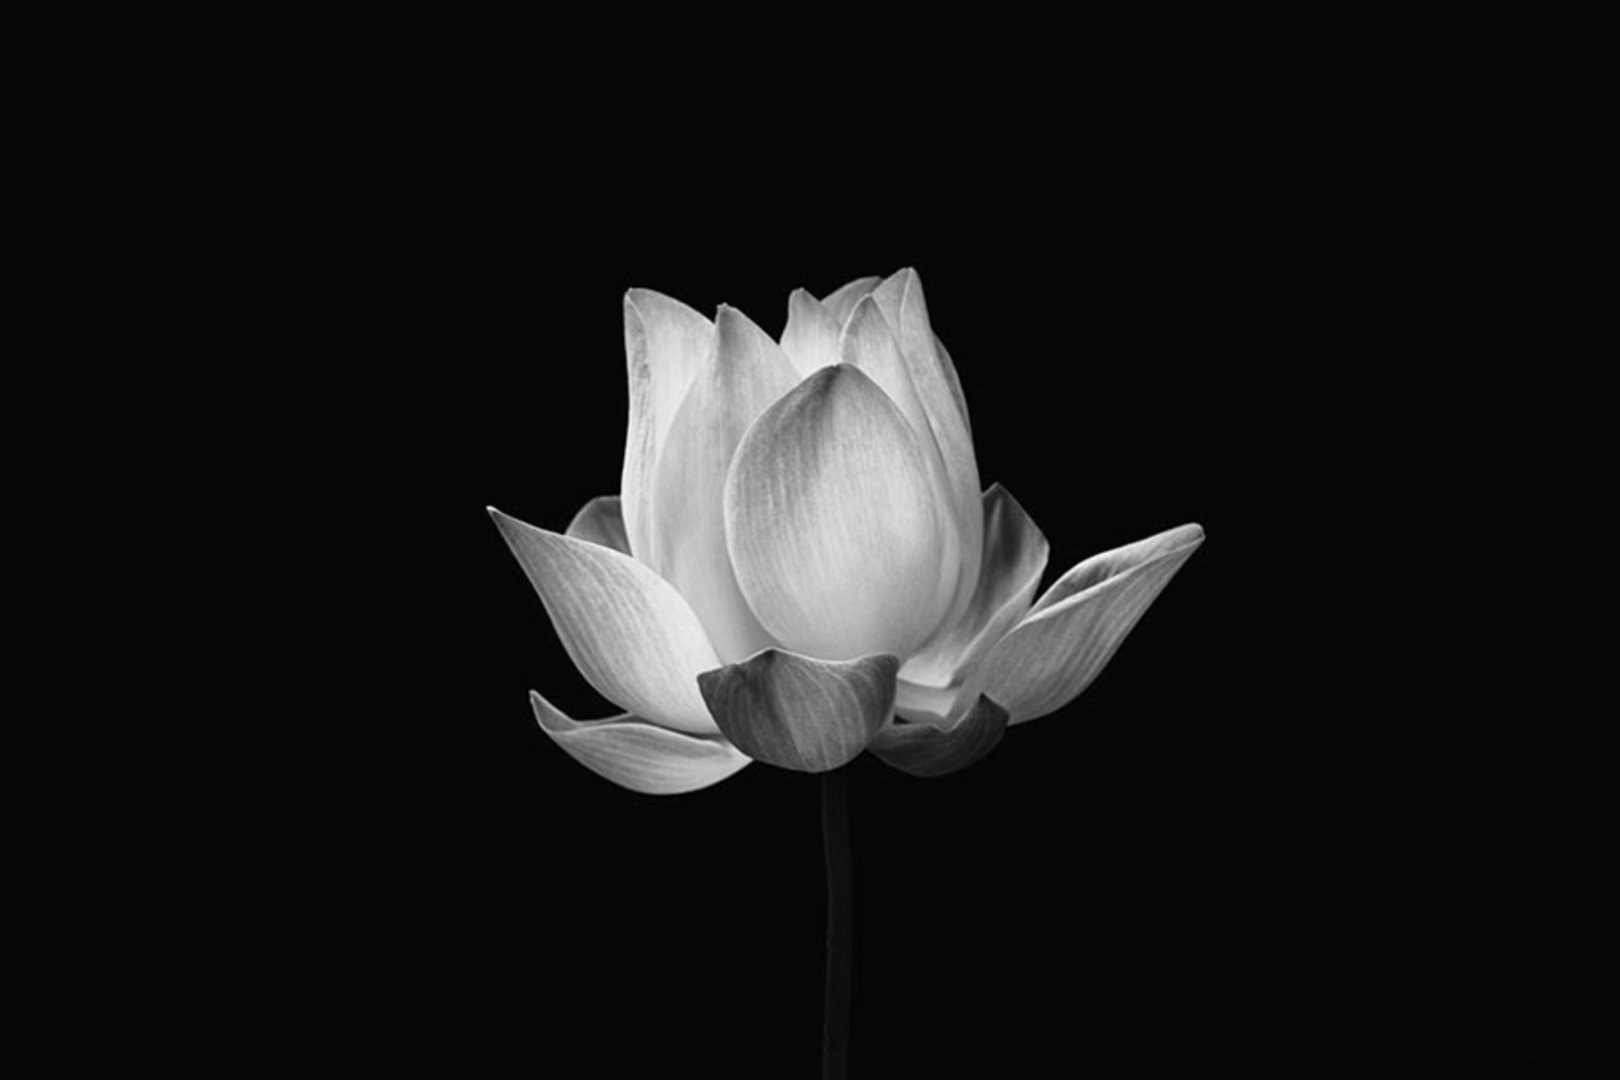 Hình hoa sen trắng nền đen: Những hình ảnh hoa sen trắng nền đen tạo nên một cảm giác đầy trang nhã, thanh lịch và tinh tế. Nó giúp cho chúng ta tìm thấy sự bình an và sự tĩnh lặng bên trong mình. Đây cũng là biểu tượng của sự cao quý và tuyệt đối trong tình yêu và tâm linh. Hãy cùng chiêm ngưỡng và thưởng thức những hình ảnh hoa sen trắng nền đen tuyệt đẹp này.